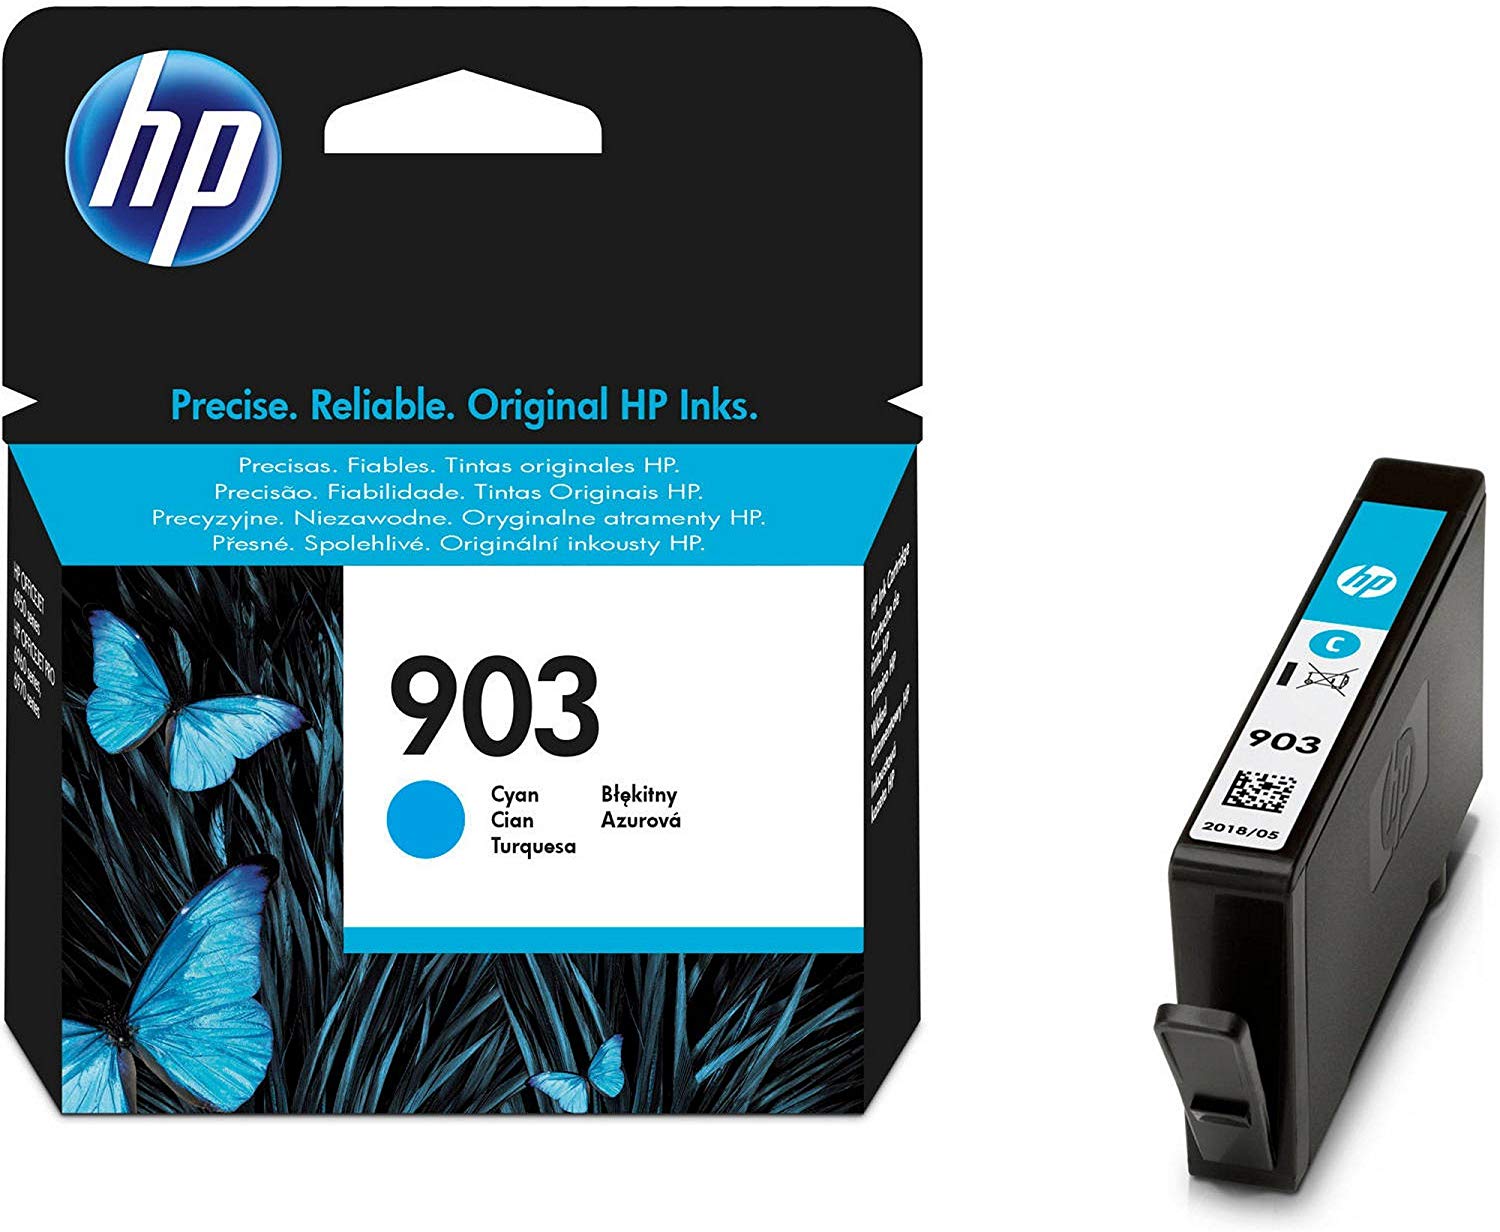 HP 903 Ink Cartridge for HP Officejet Pro 6960